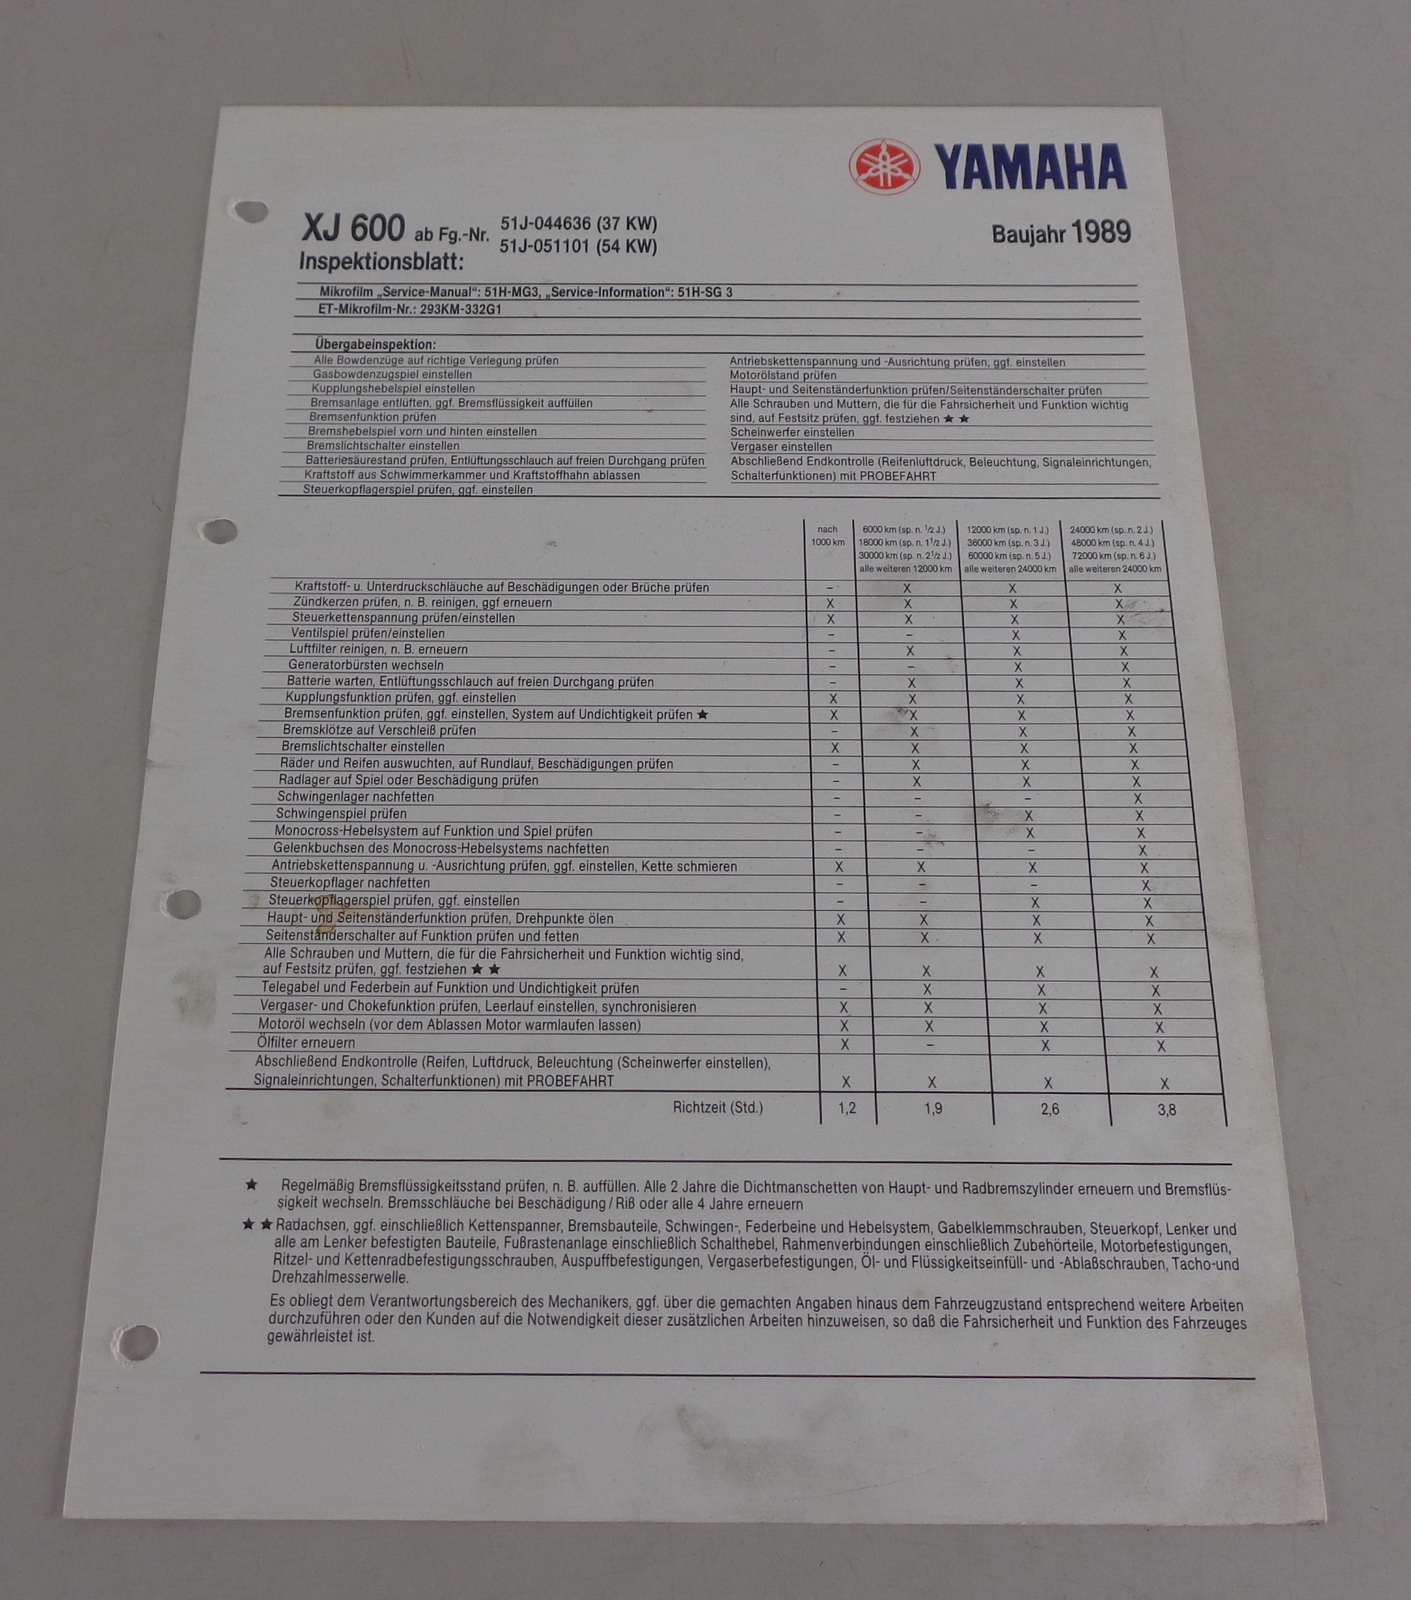 Inspektionsblatt Yamaha XJ 600 Typ 51J Baujahr 1989 | PK-Buch